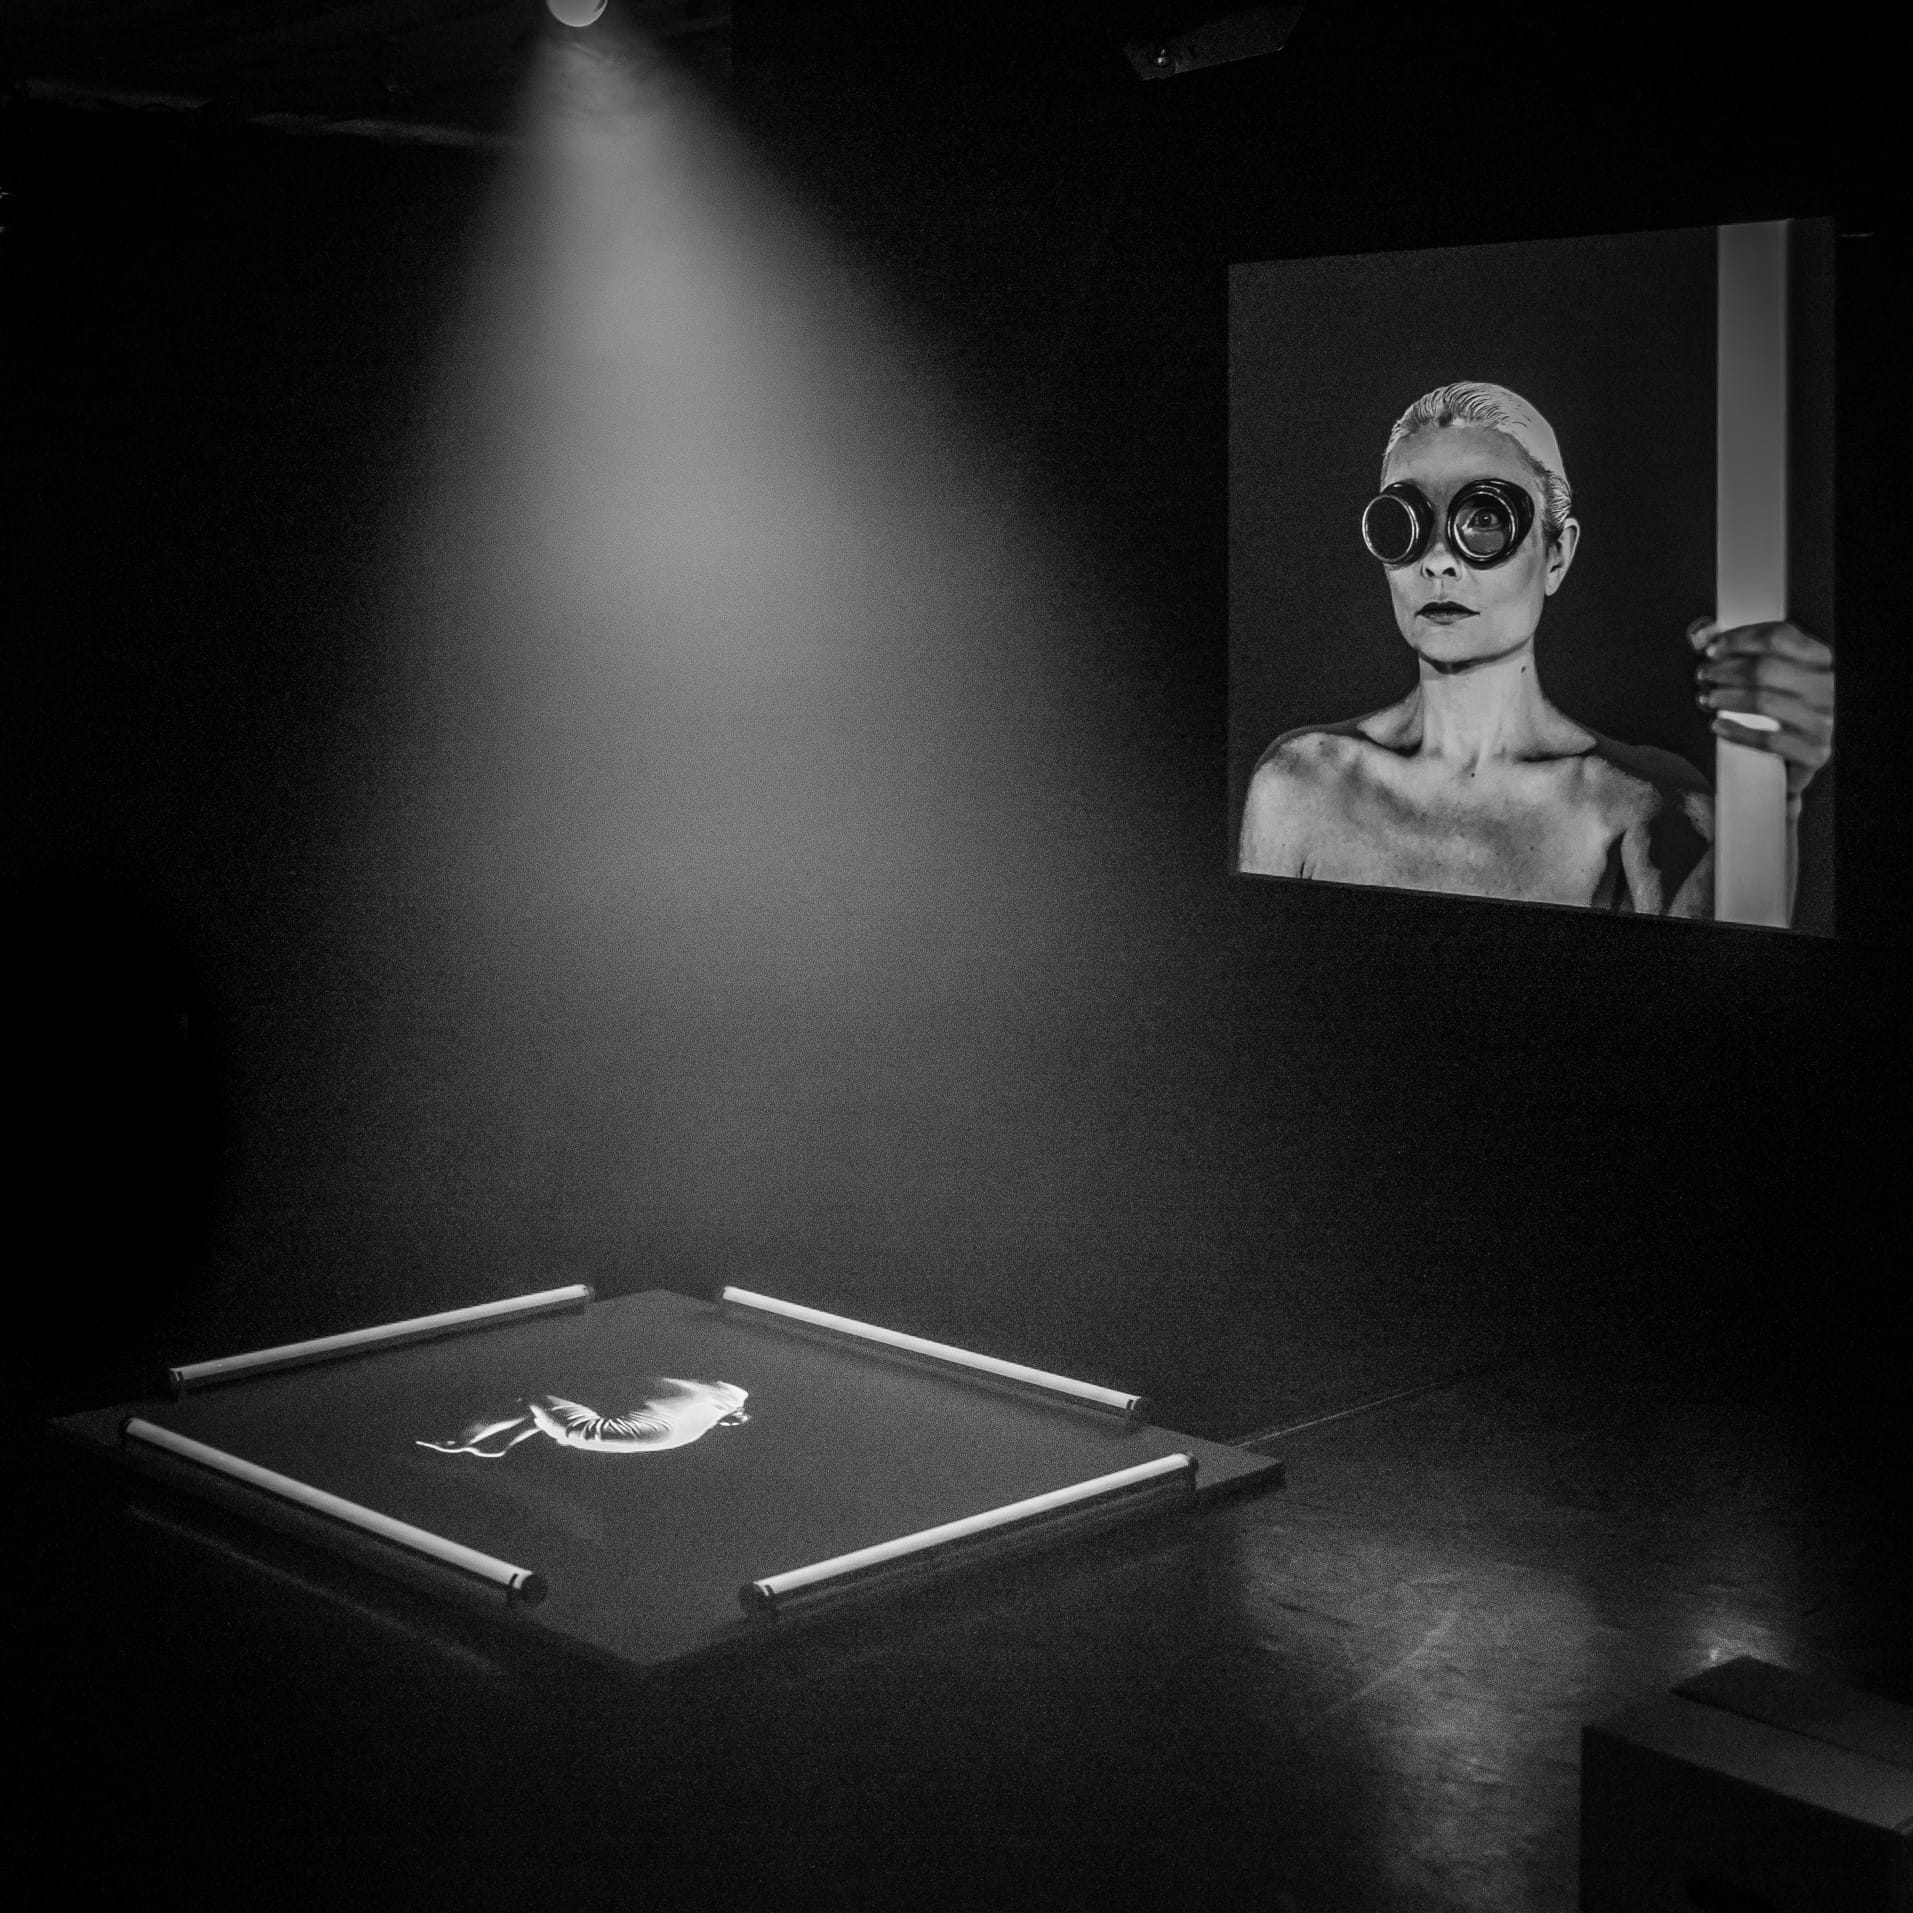 Nachts - interaktive Installation nach Franz Kafka